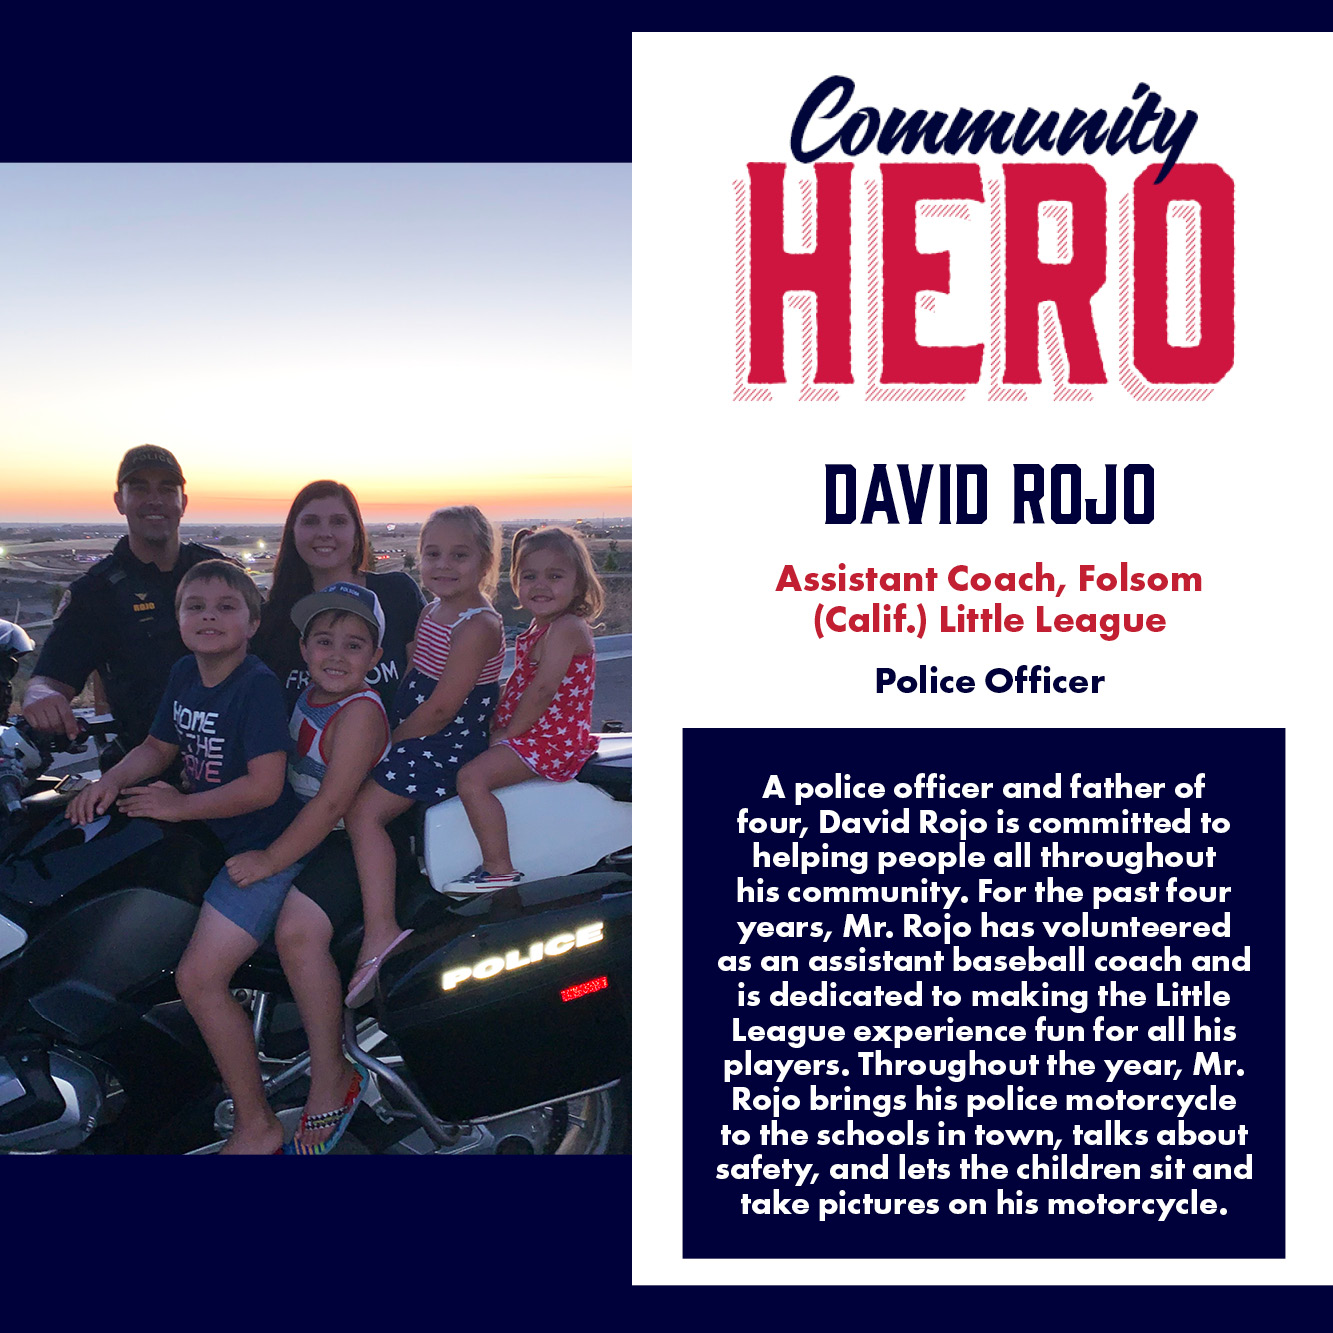 David Rojo Community Hero